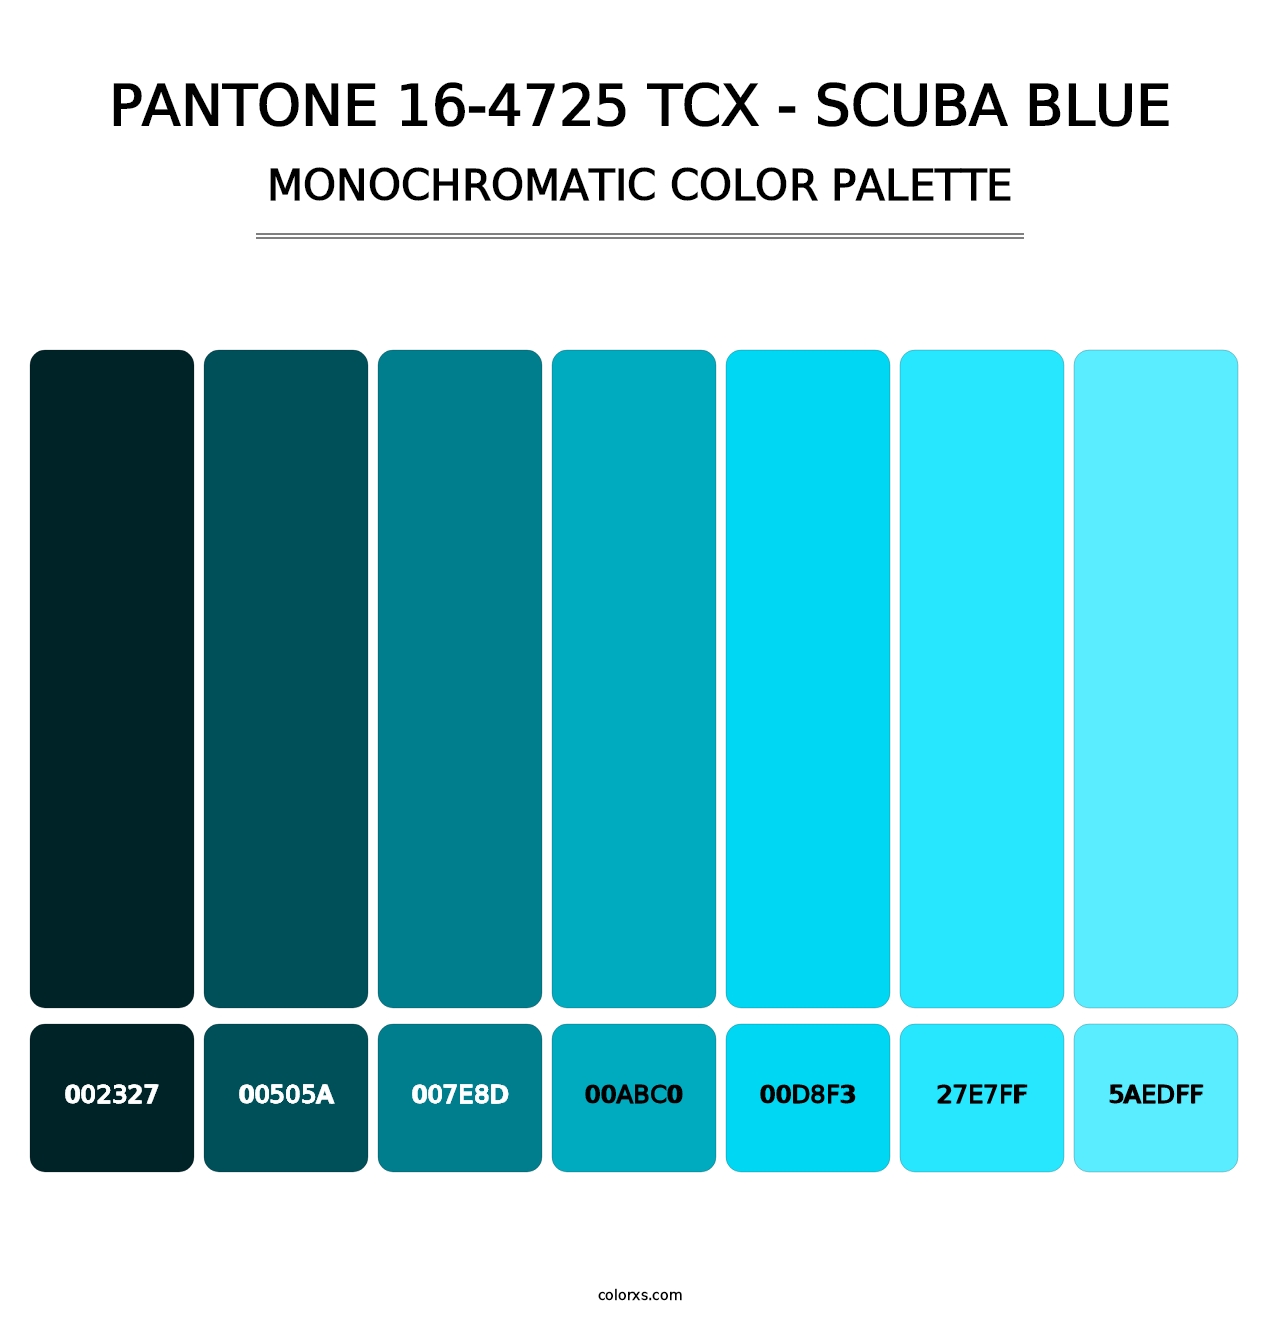 PANTONE 16-4725 TCX - Scuba Blue - Monochromatic Color Palette